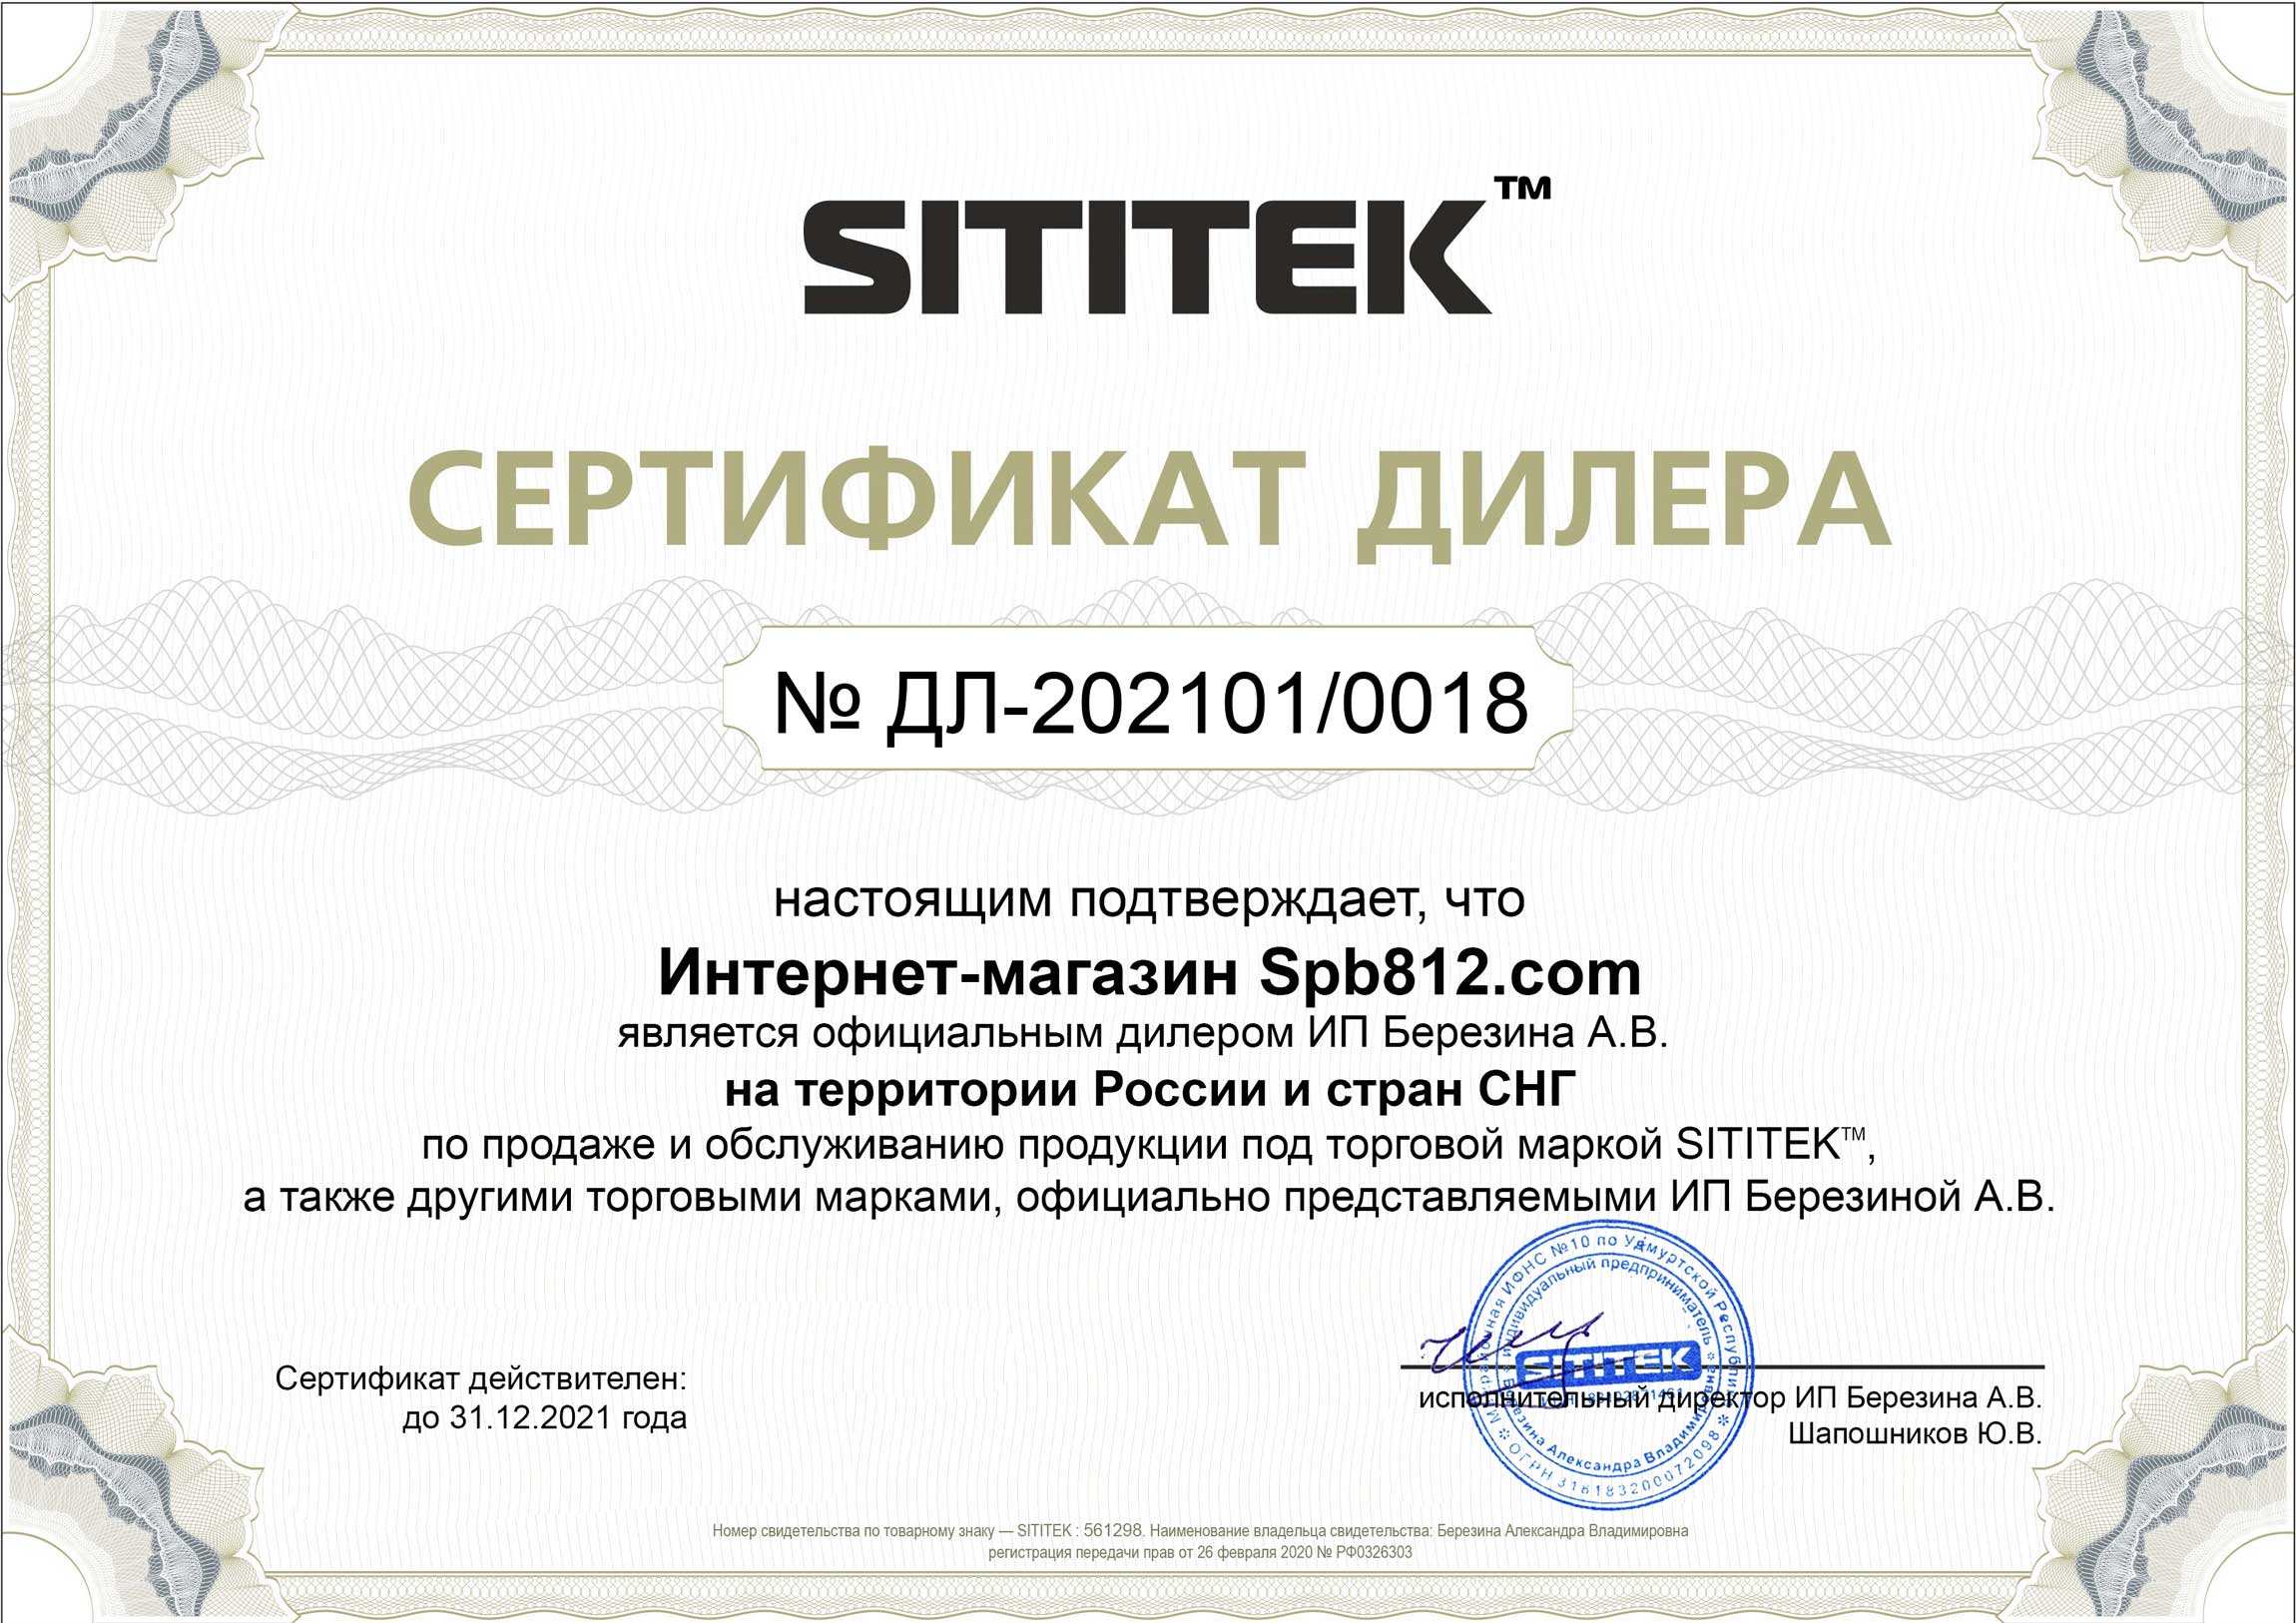 Сертификат дилера на продажу и обслуживание продукции компании Sititek в России и СНГ